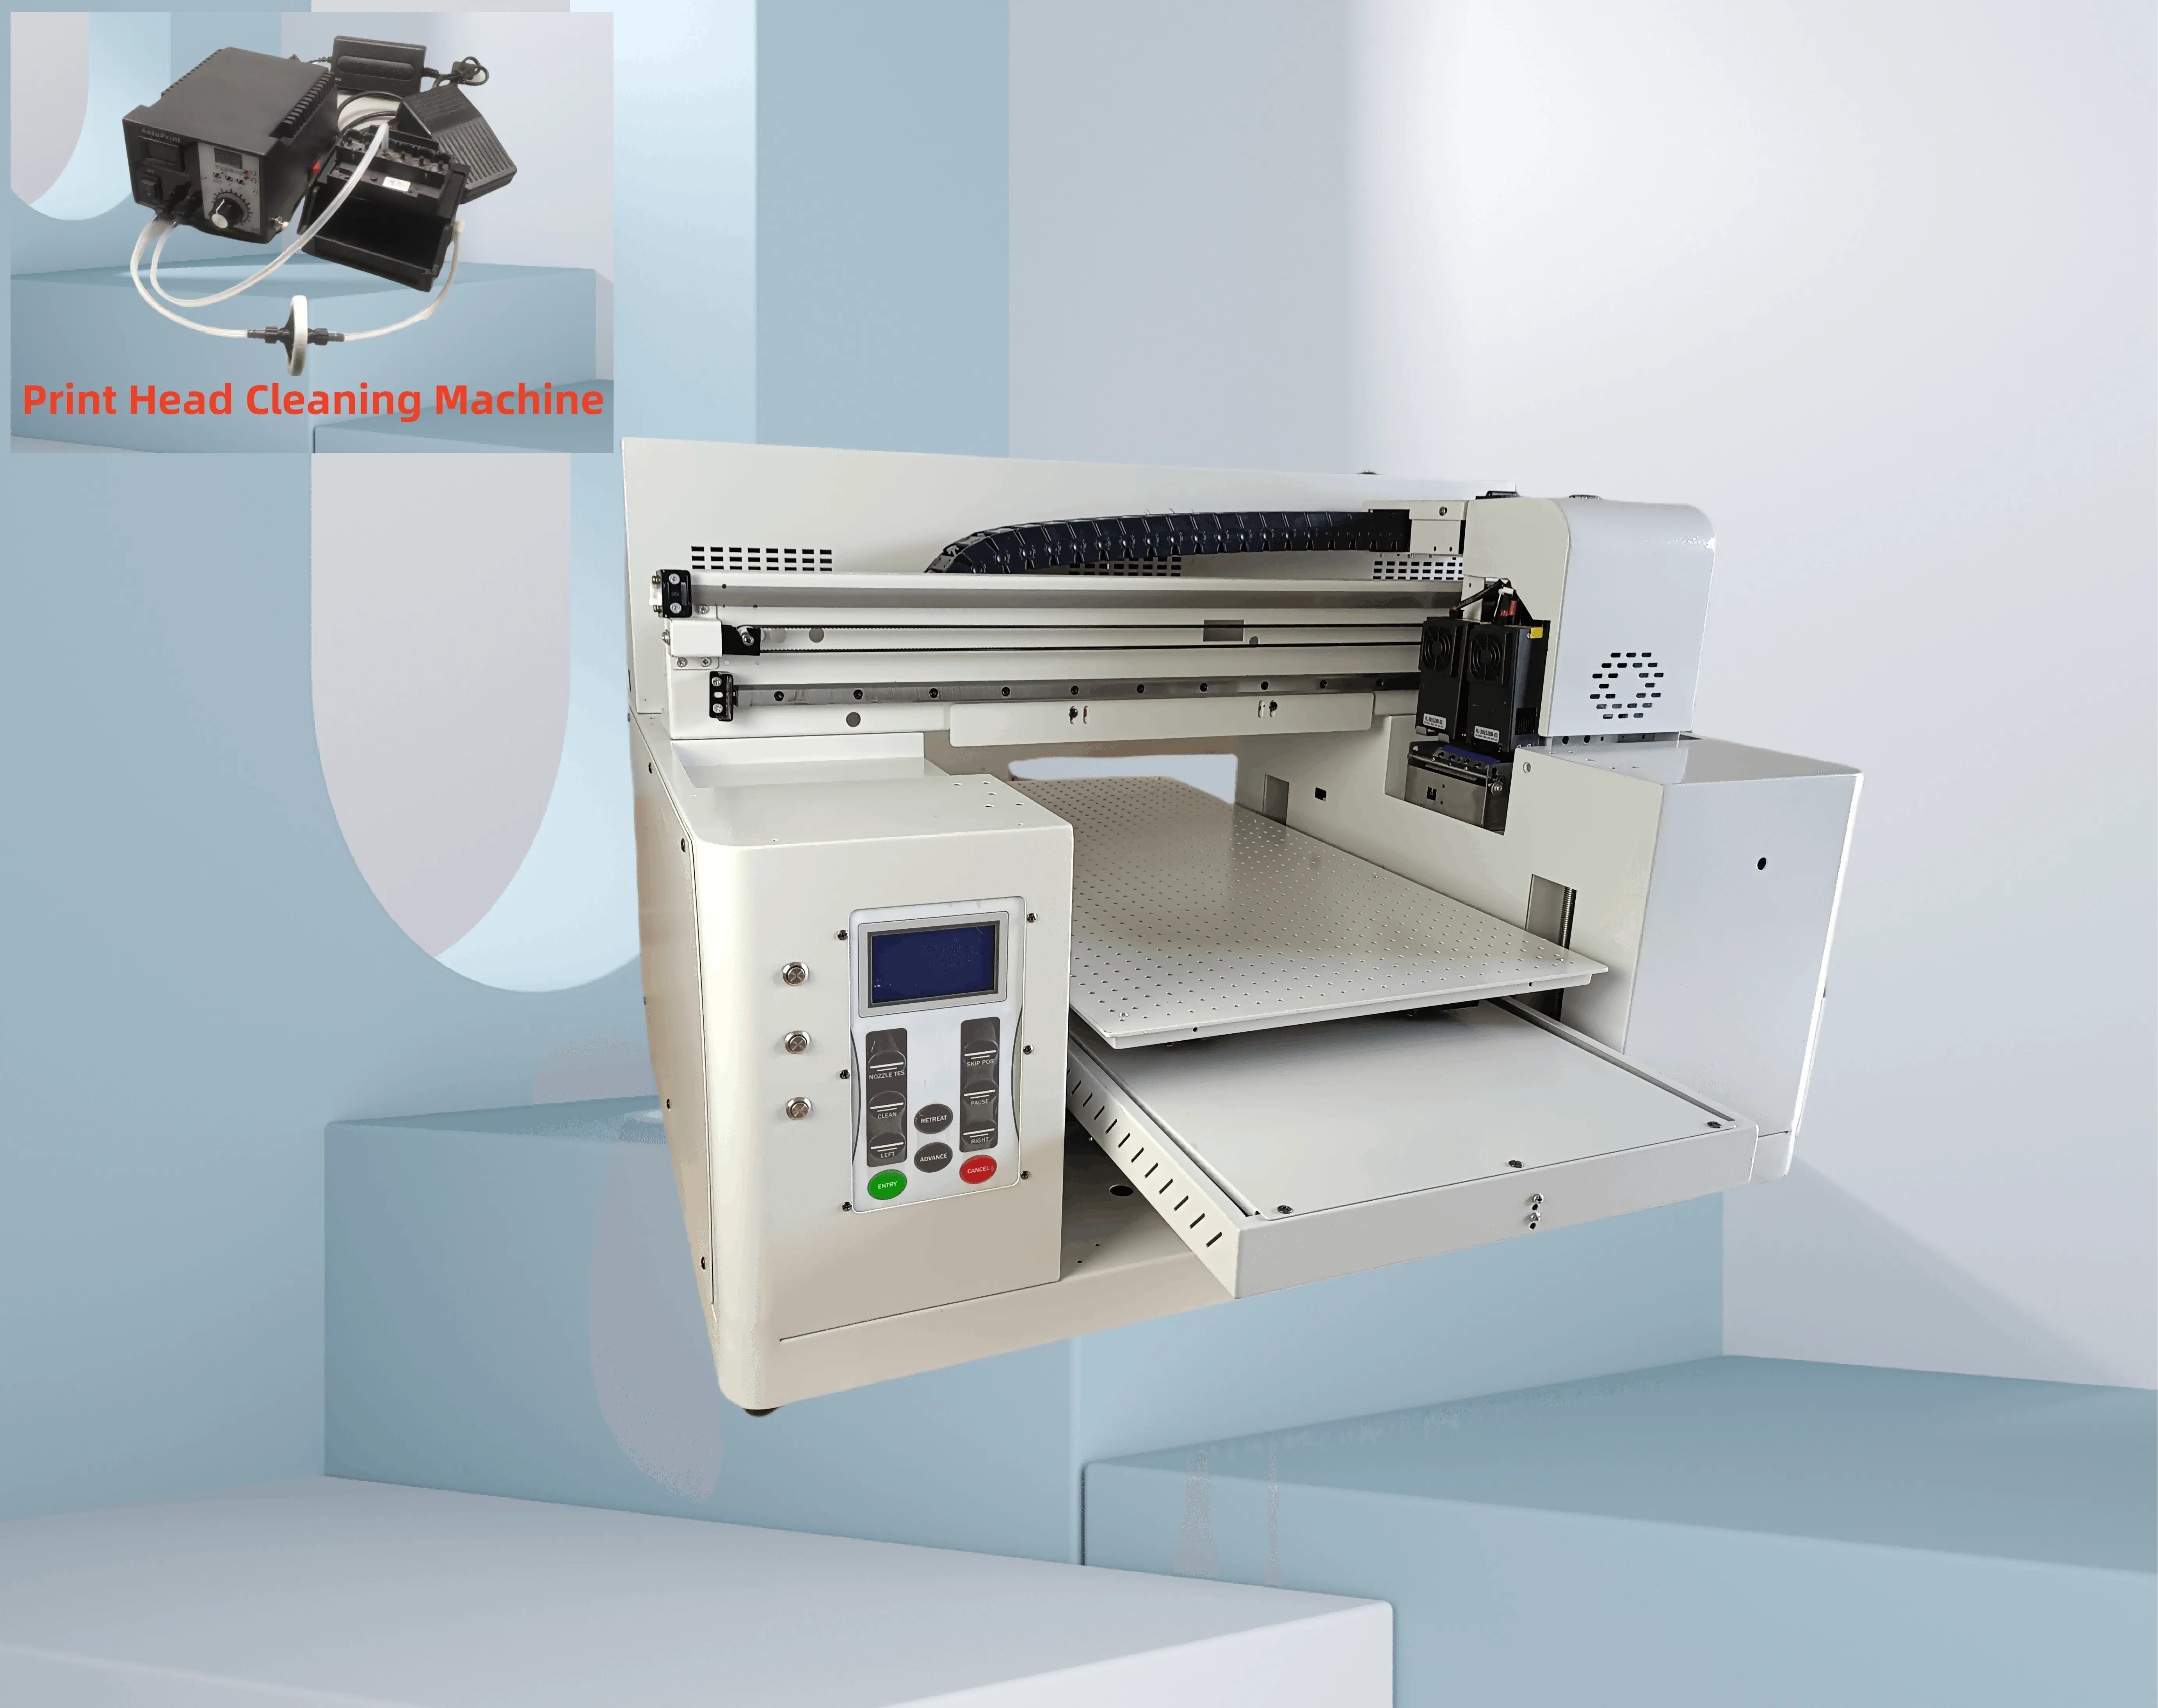 ماكينة طابعة مسطحة بالأشعة فوق البنفسجية لجميع المواد بحجم a2 وذات قالب كبير وطلاء ورأس مزدوج TX800 4060 مع ماكينة تنظيف رأس الطباعة